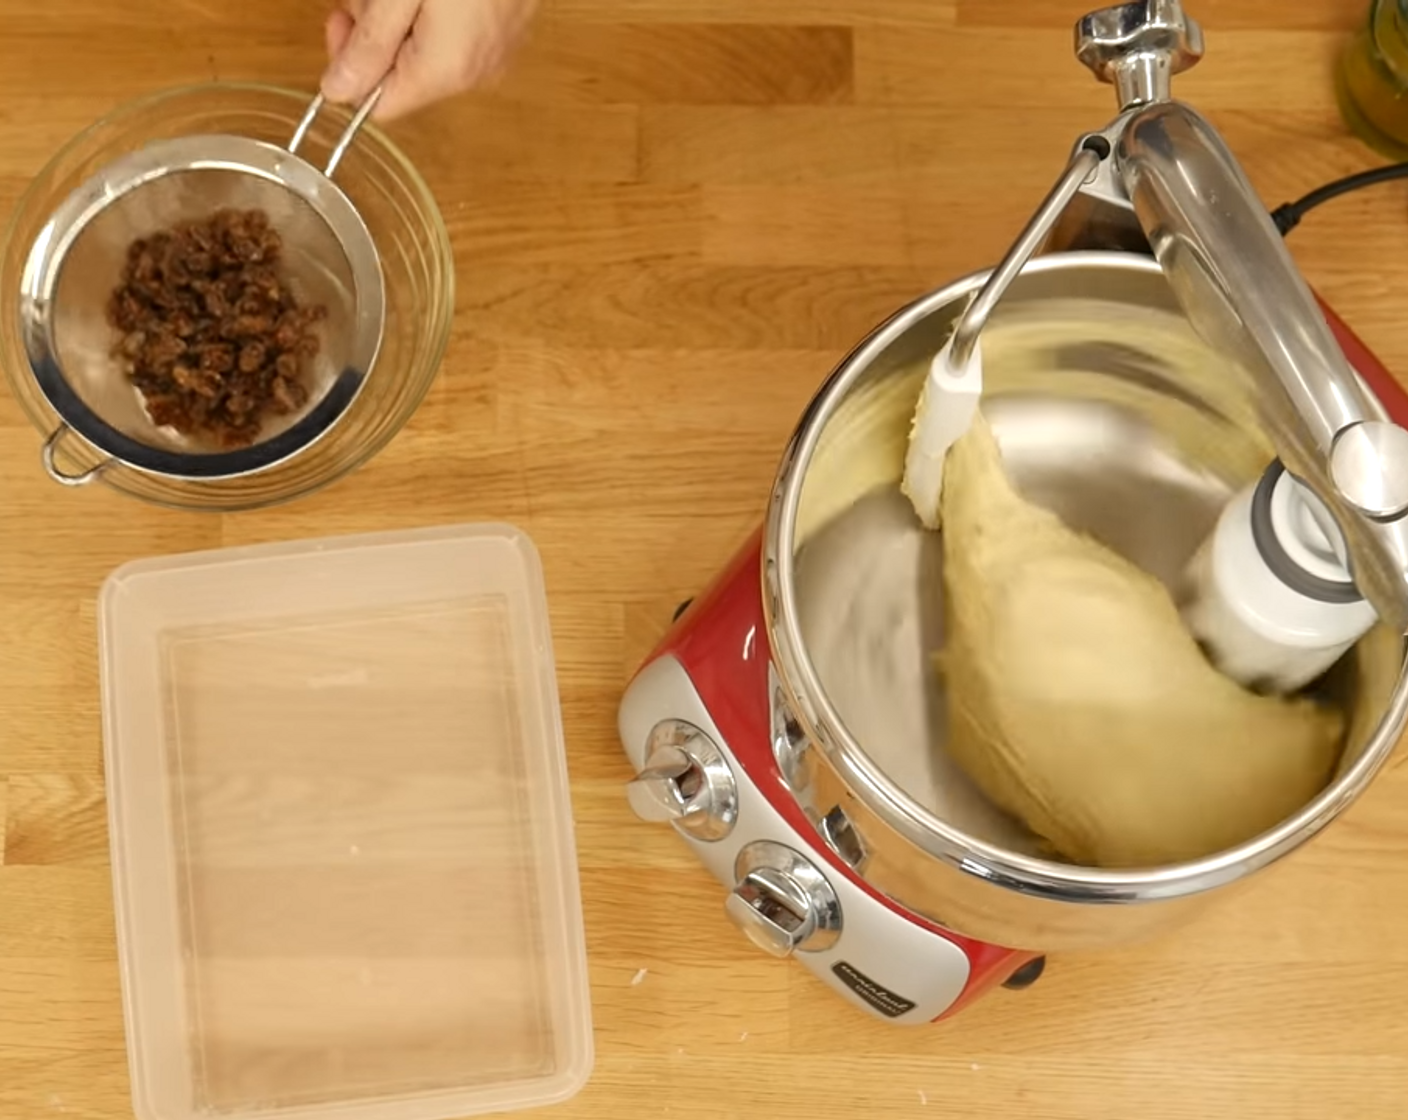 Schritt 4 Hefeteig: Milch (240 g), Ei (1), Malzextrakt (3 g), Salz (2 Teelöffel), Butter (100 g), Mehl (500 g), Hefe (15 g), Sauerteig (40 g) in die Küchenmaschine zur Mandelmasse geben und auf mittlerer Geschwindigkeit ca. 12-15 Minuten kneten.